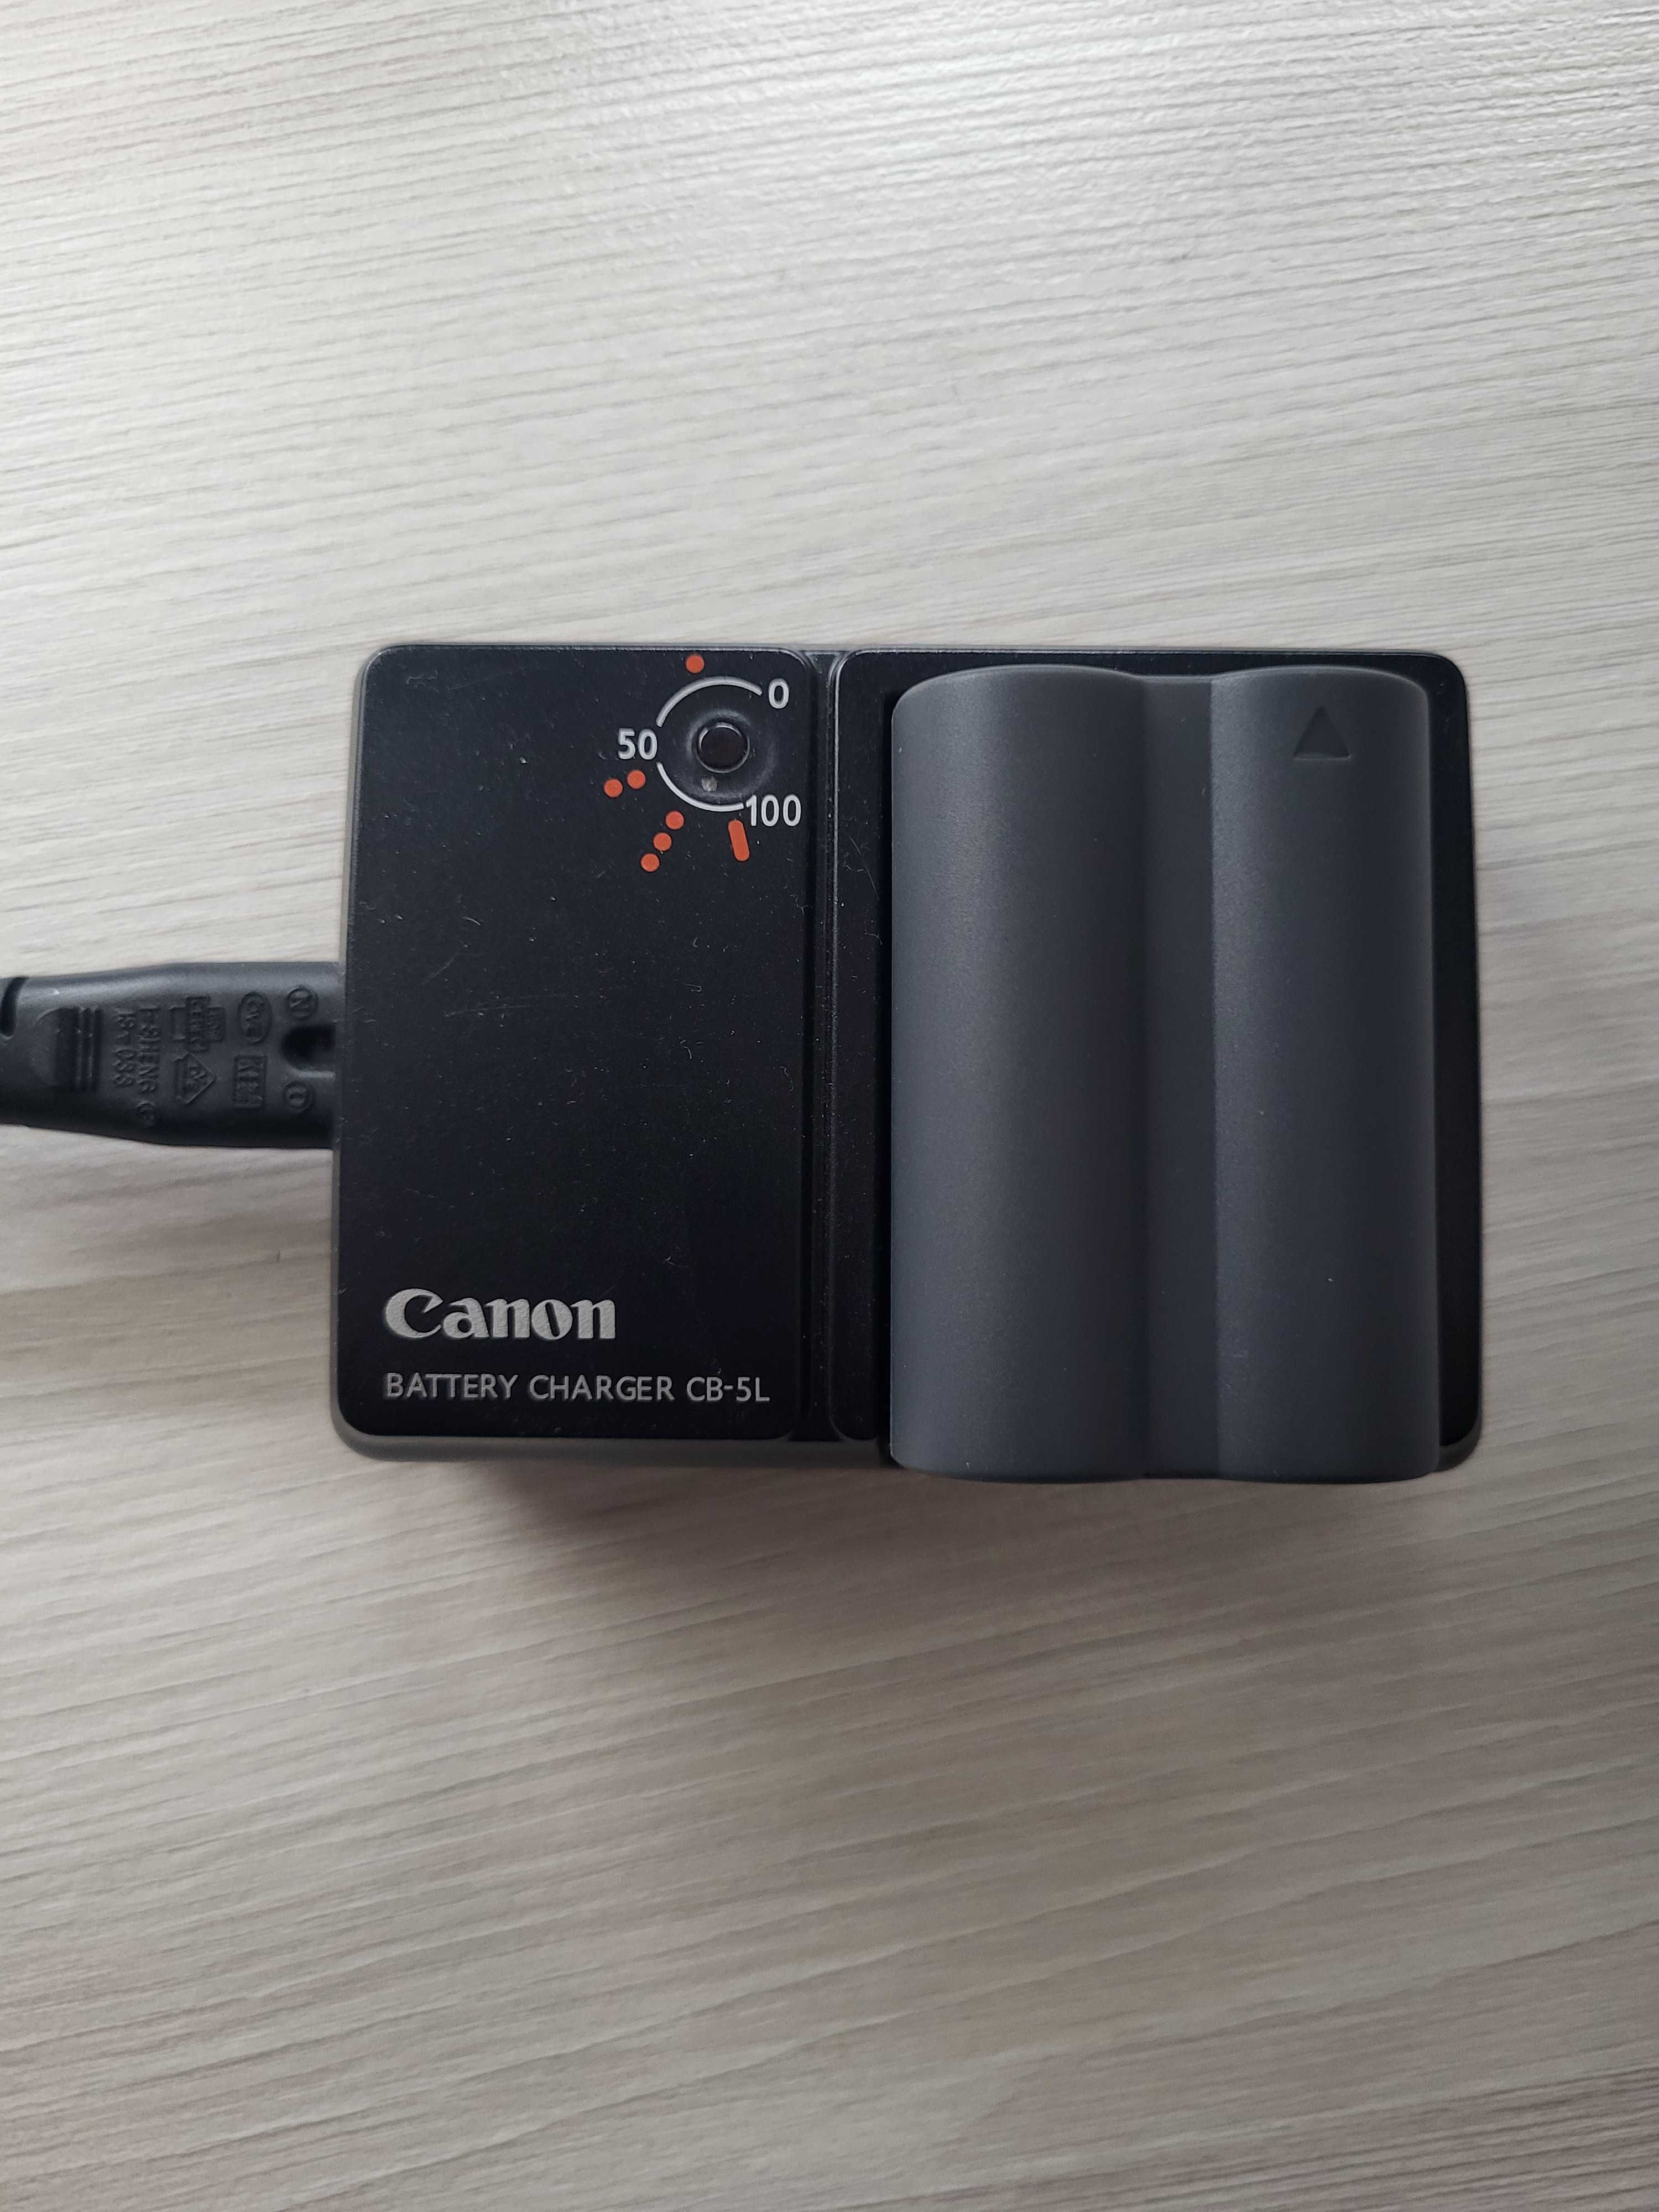 Aparat CANON EOS 50D + obiektyw 18-200mm